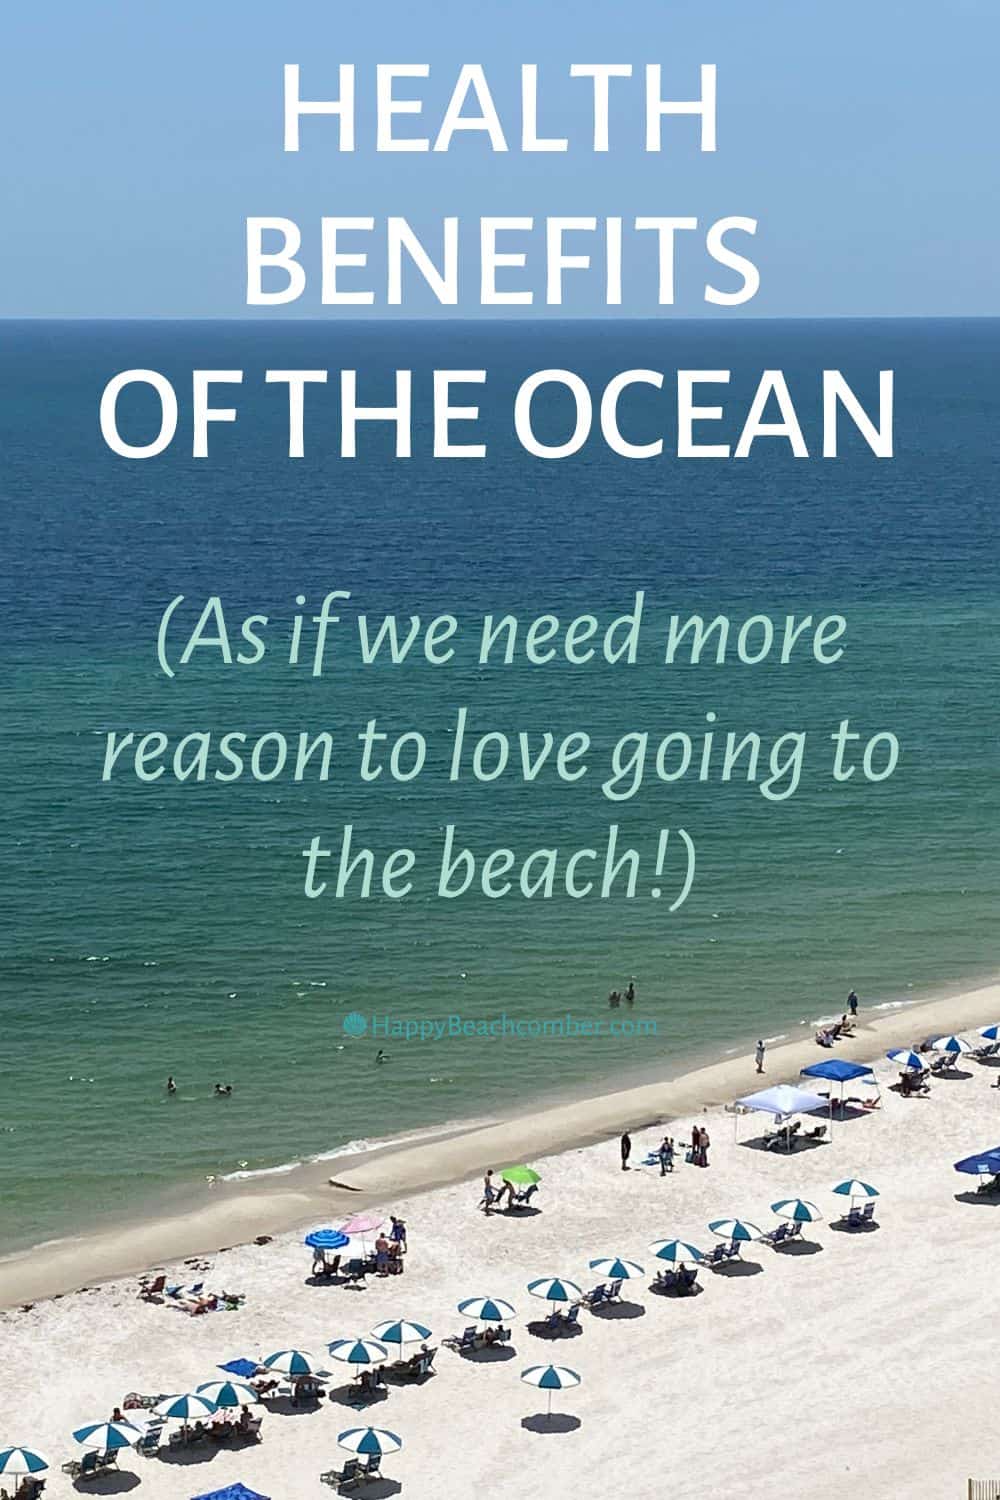 Health Benefits of the Ocean